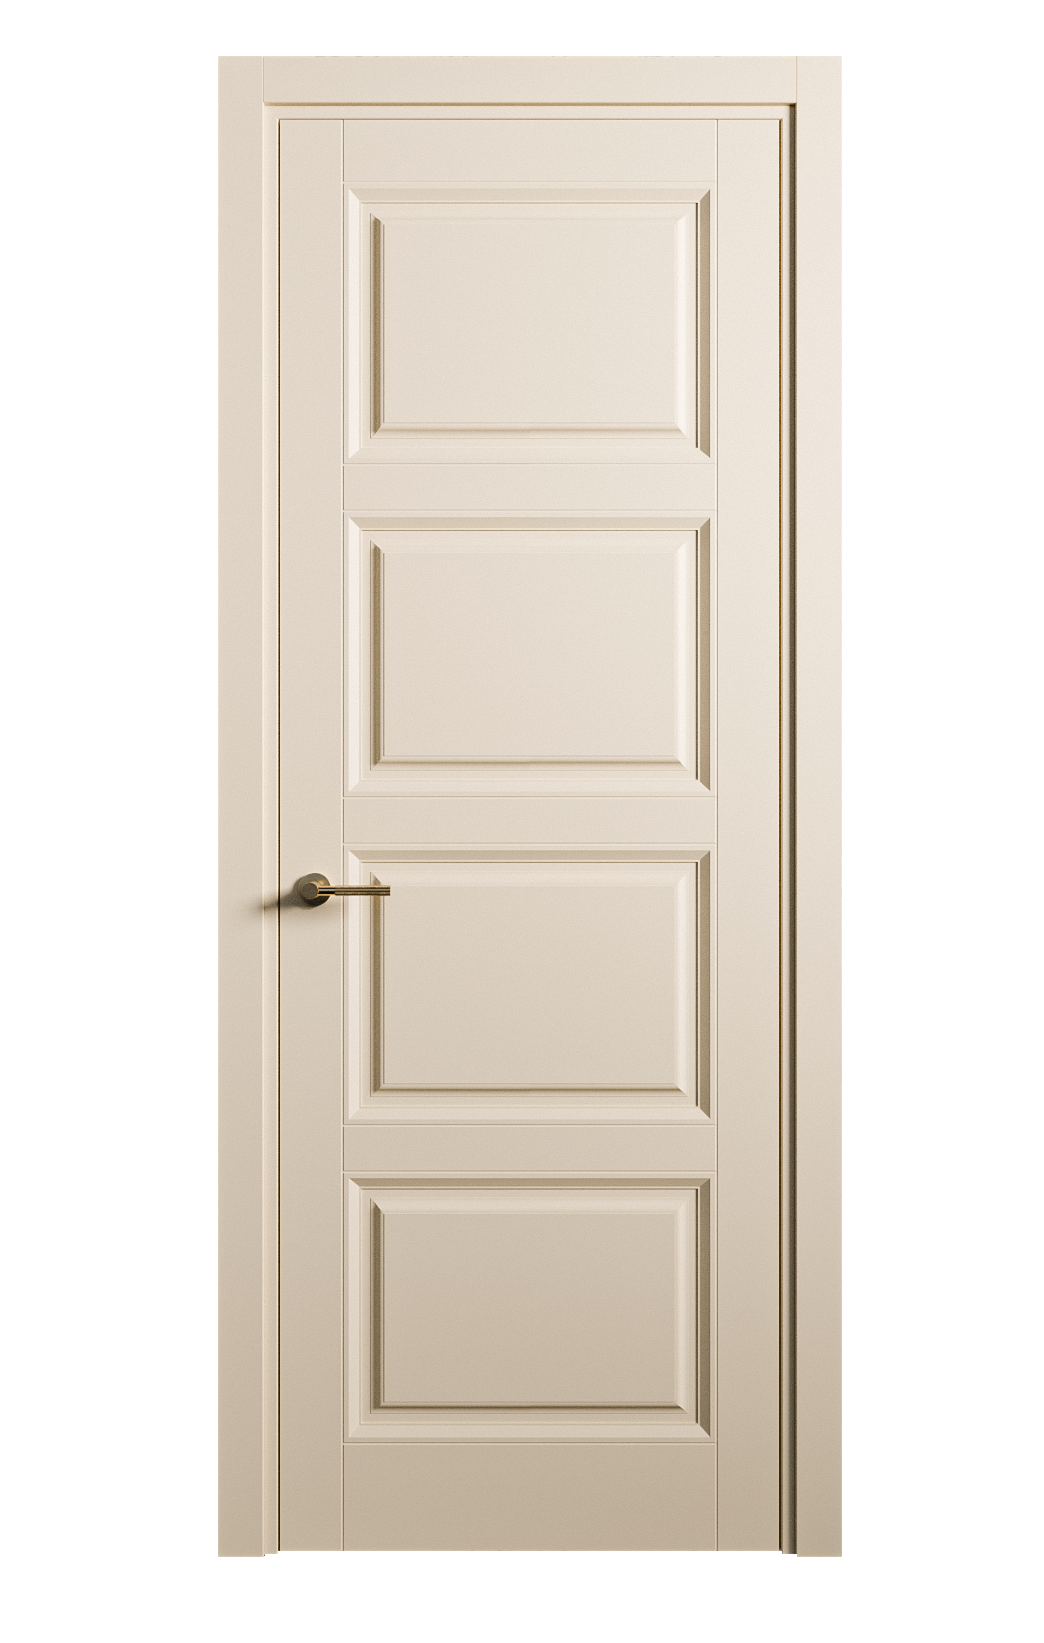 Межкомнатная дверь Venezia-4 глухая эмаль ral 1015 25860